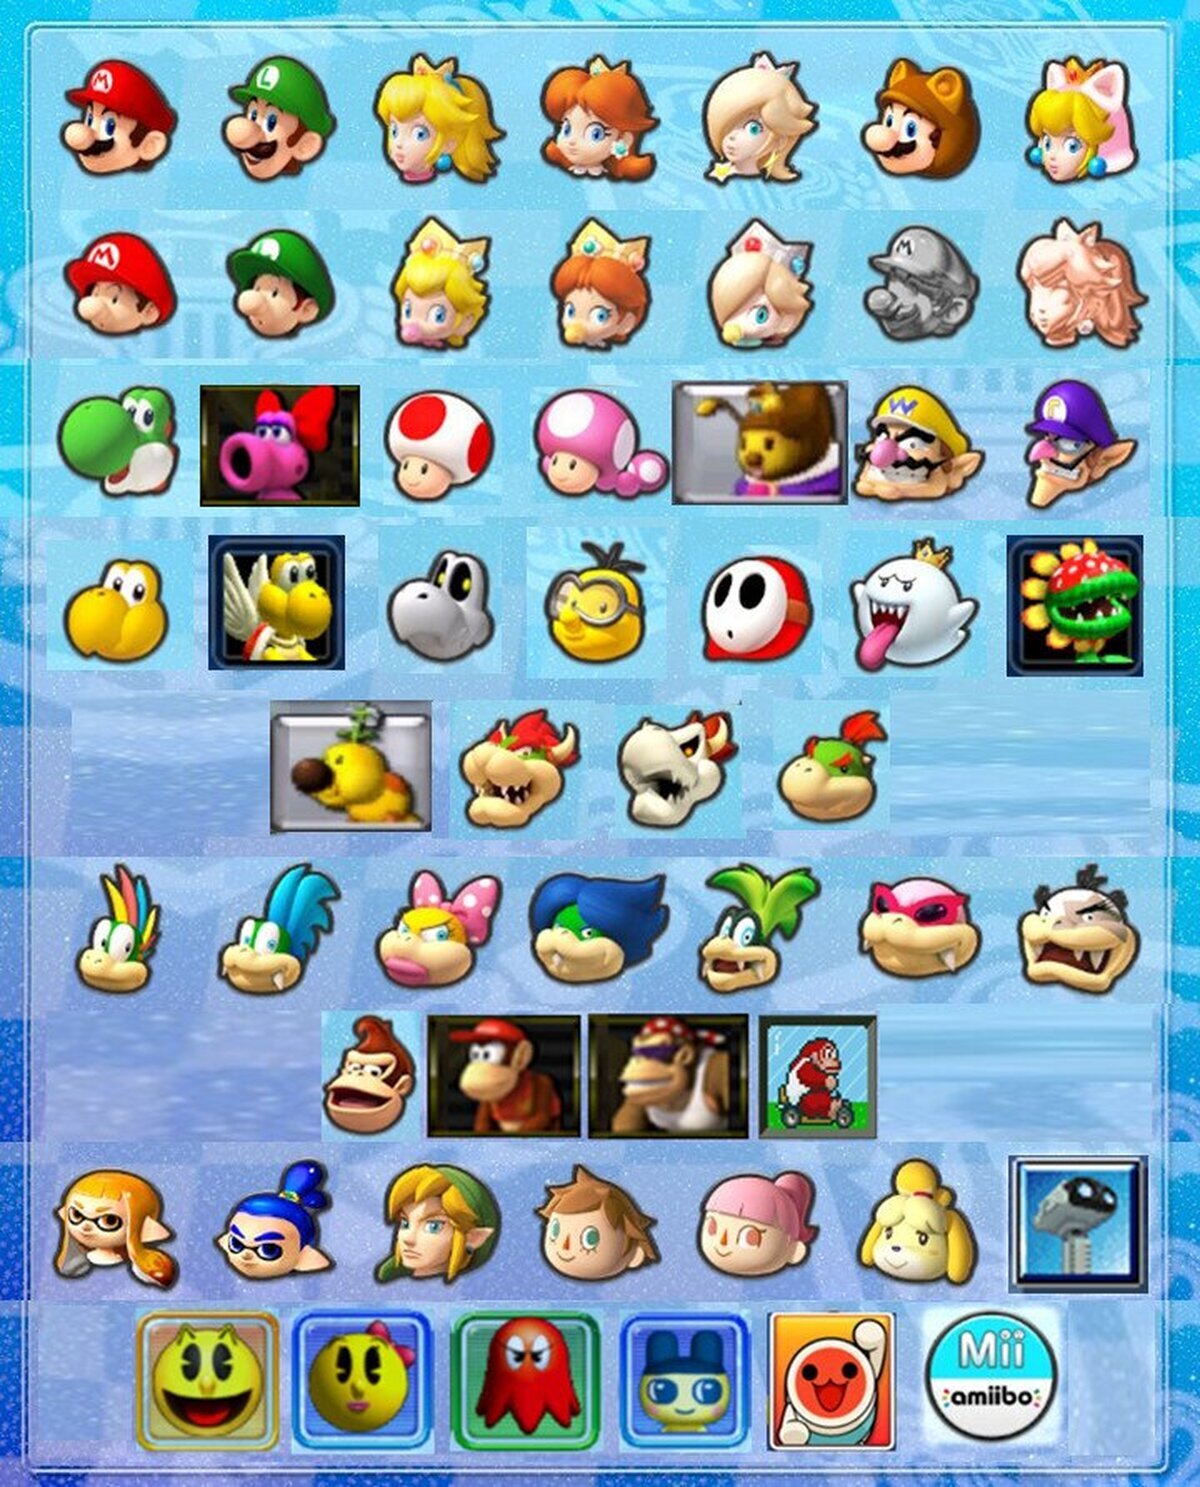 Si todos los personajes volviesen en un Mario Kart Ultimate.